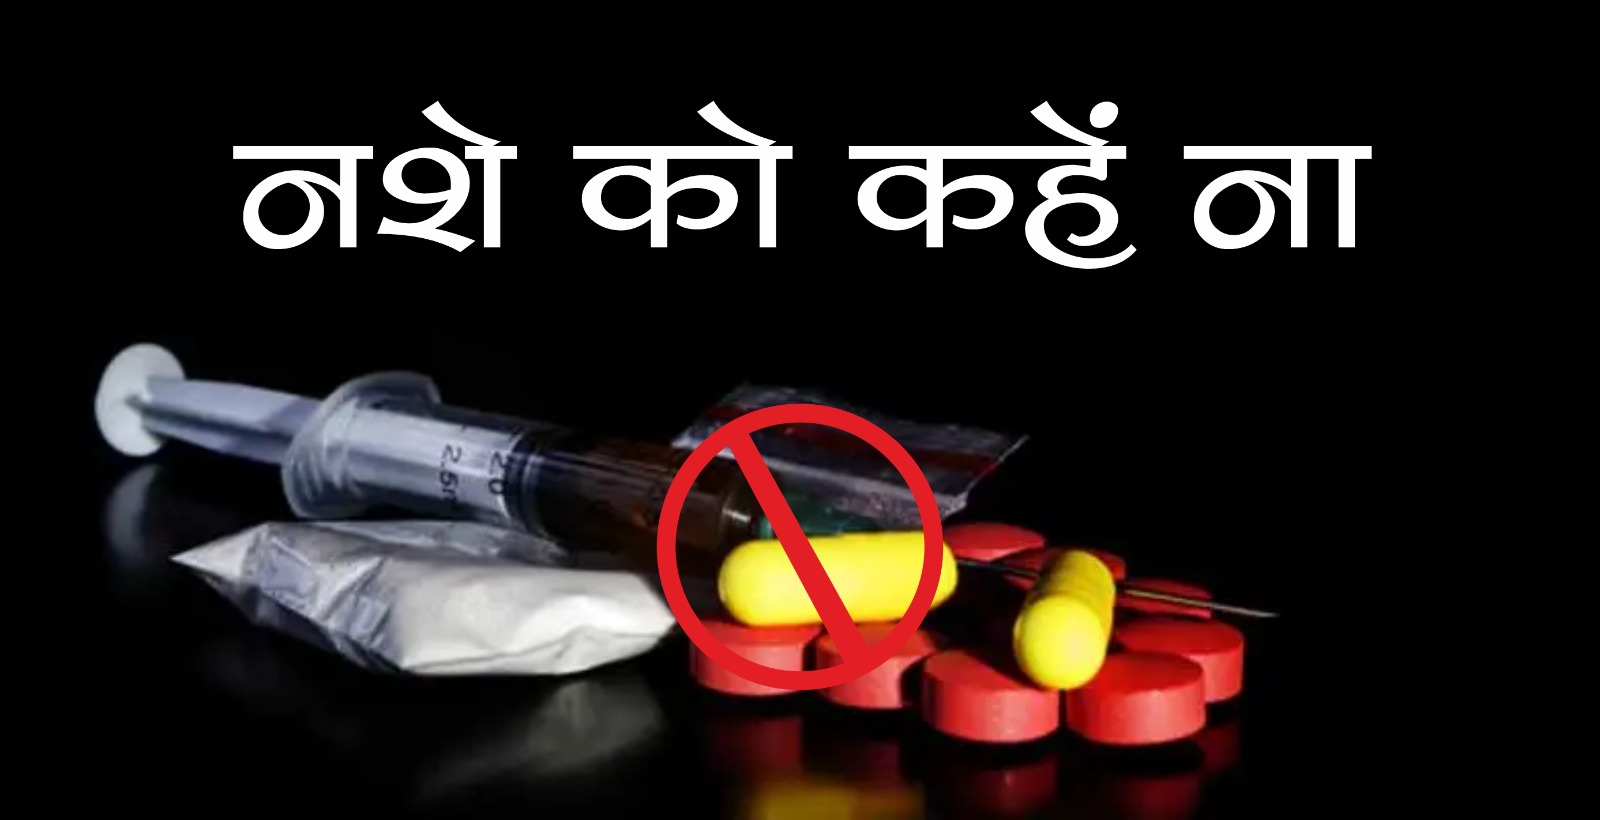 नशीली दवाओं से भारतीय समाज को बचाने की मुहिम एनपीडीडीआर